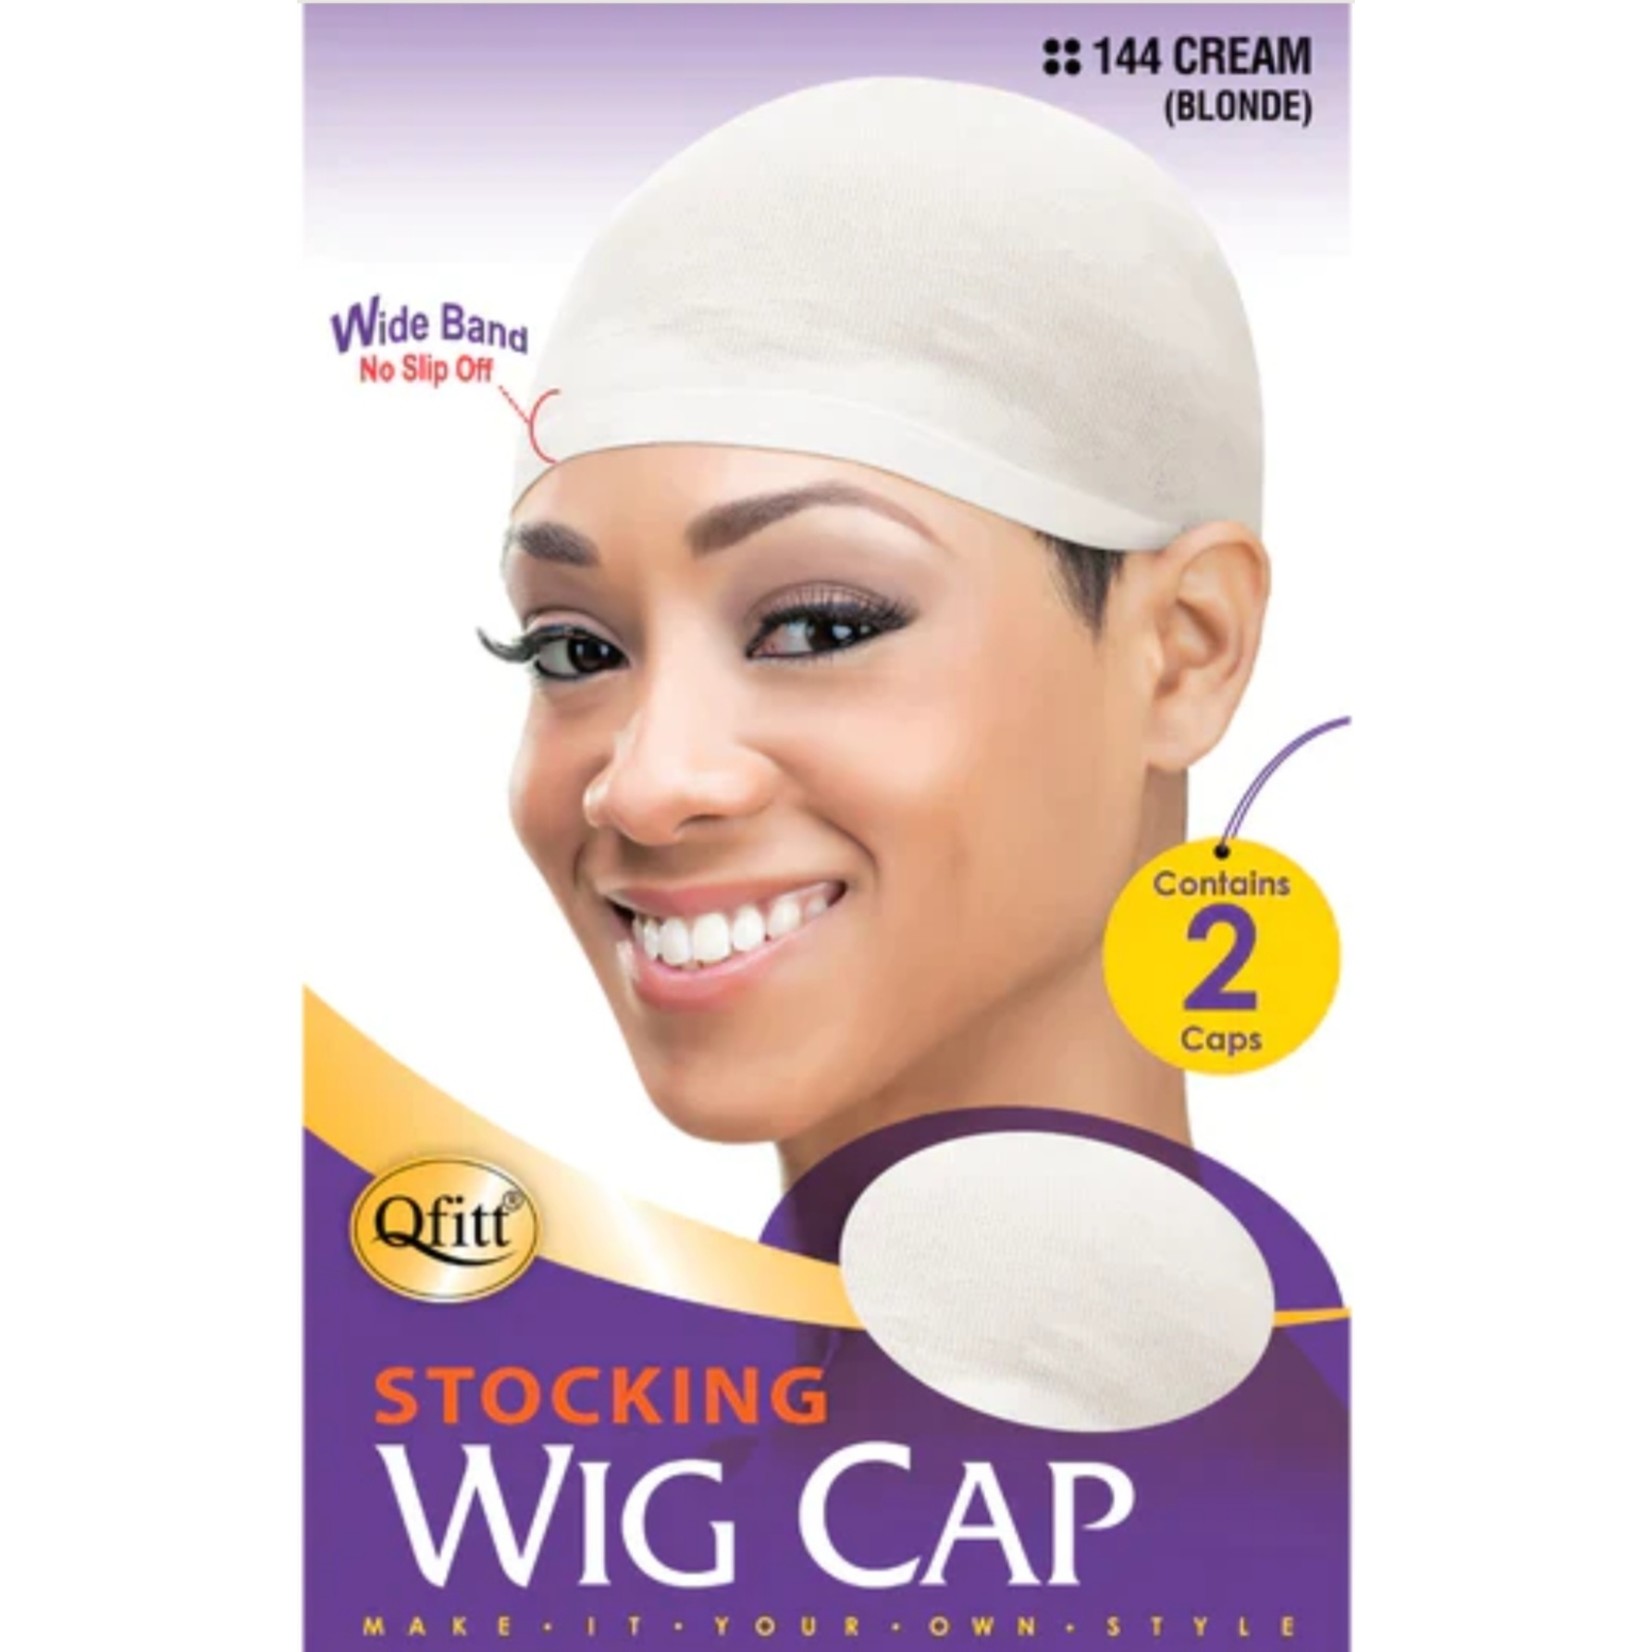 QFitt Wig Cap Cream #144